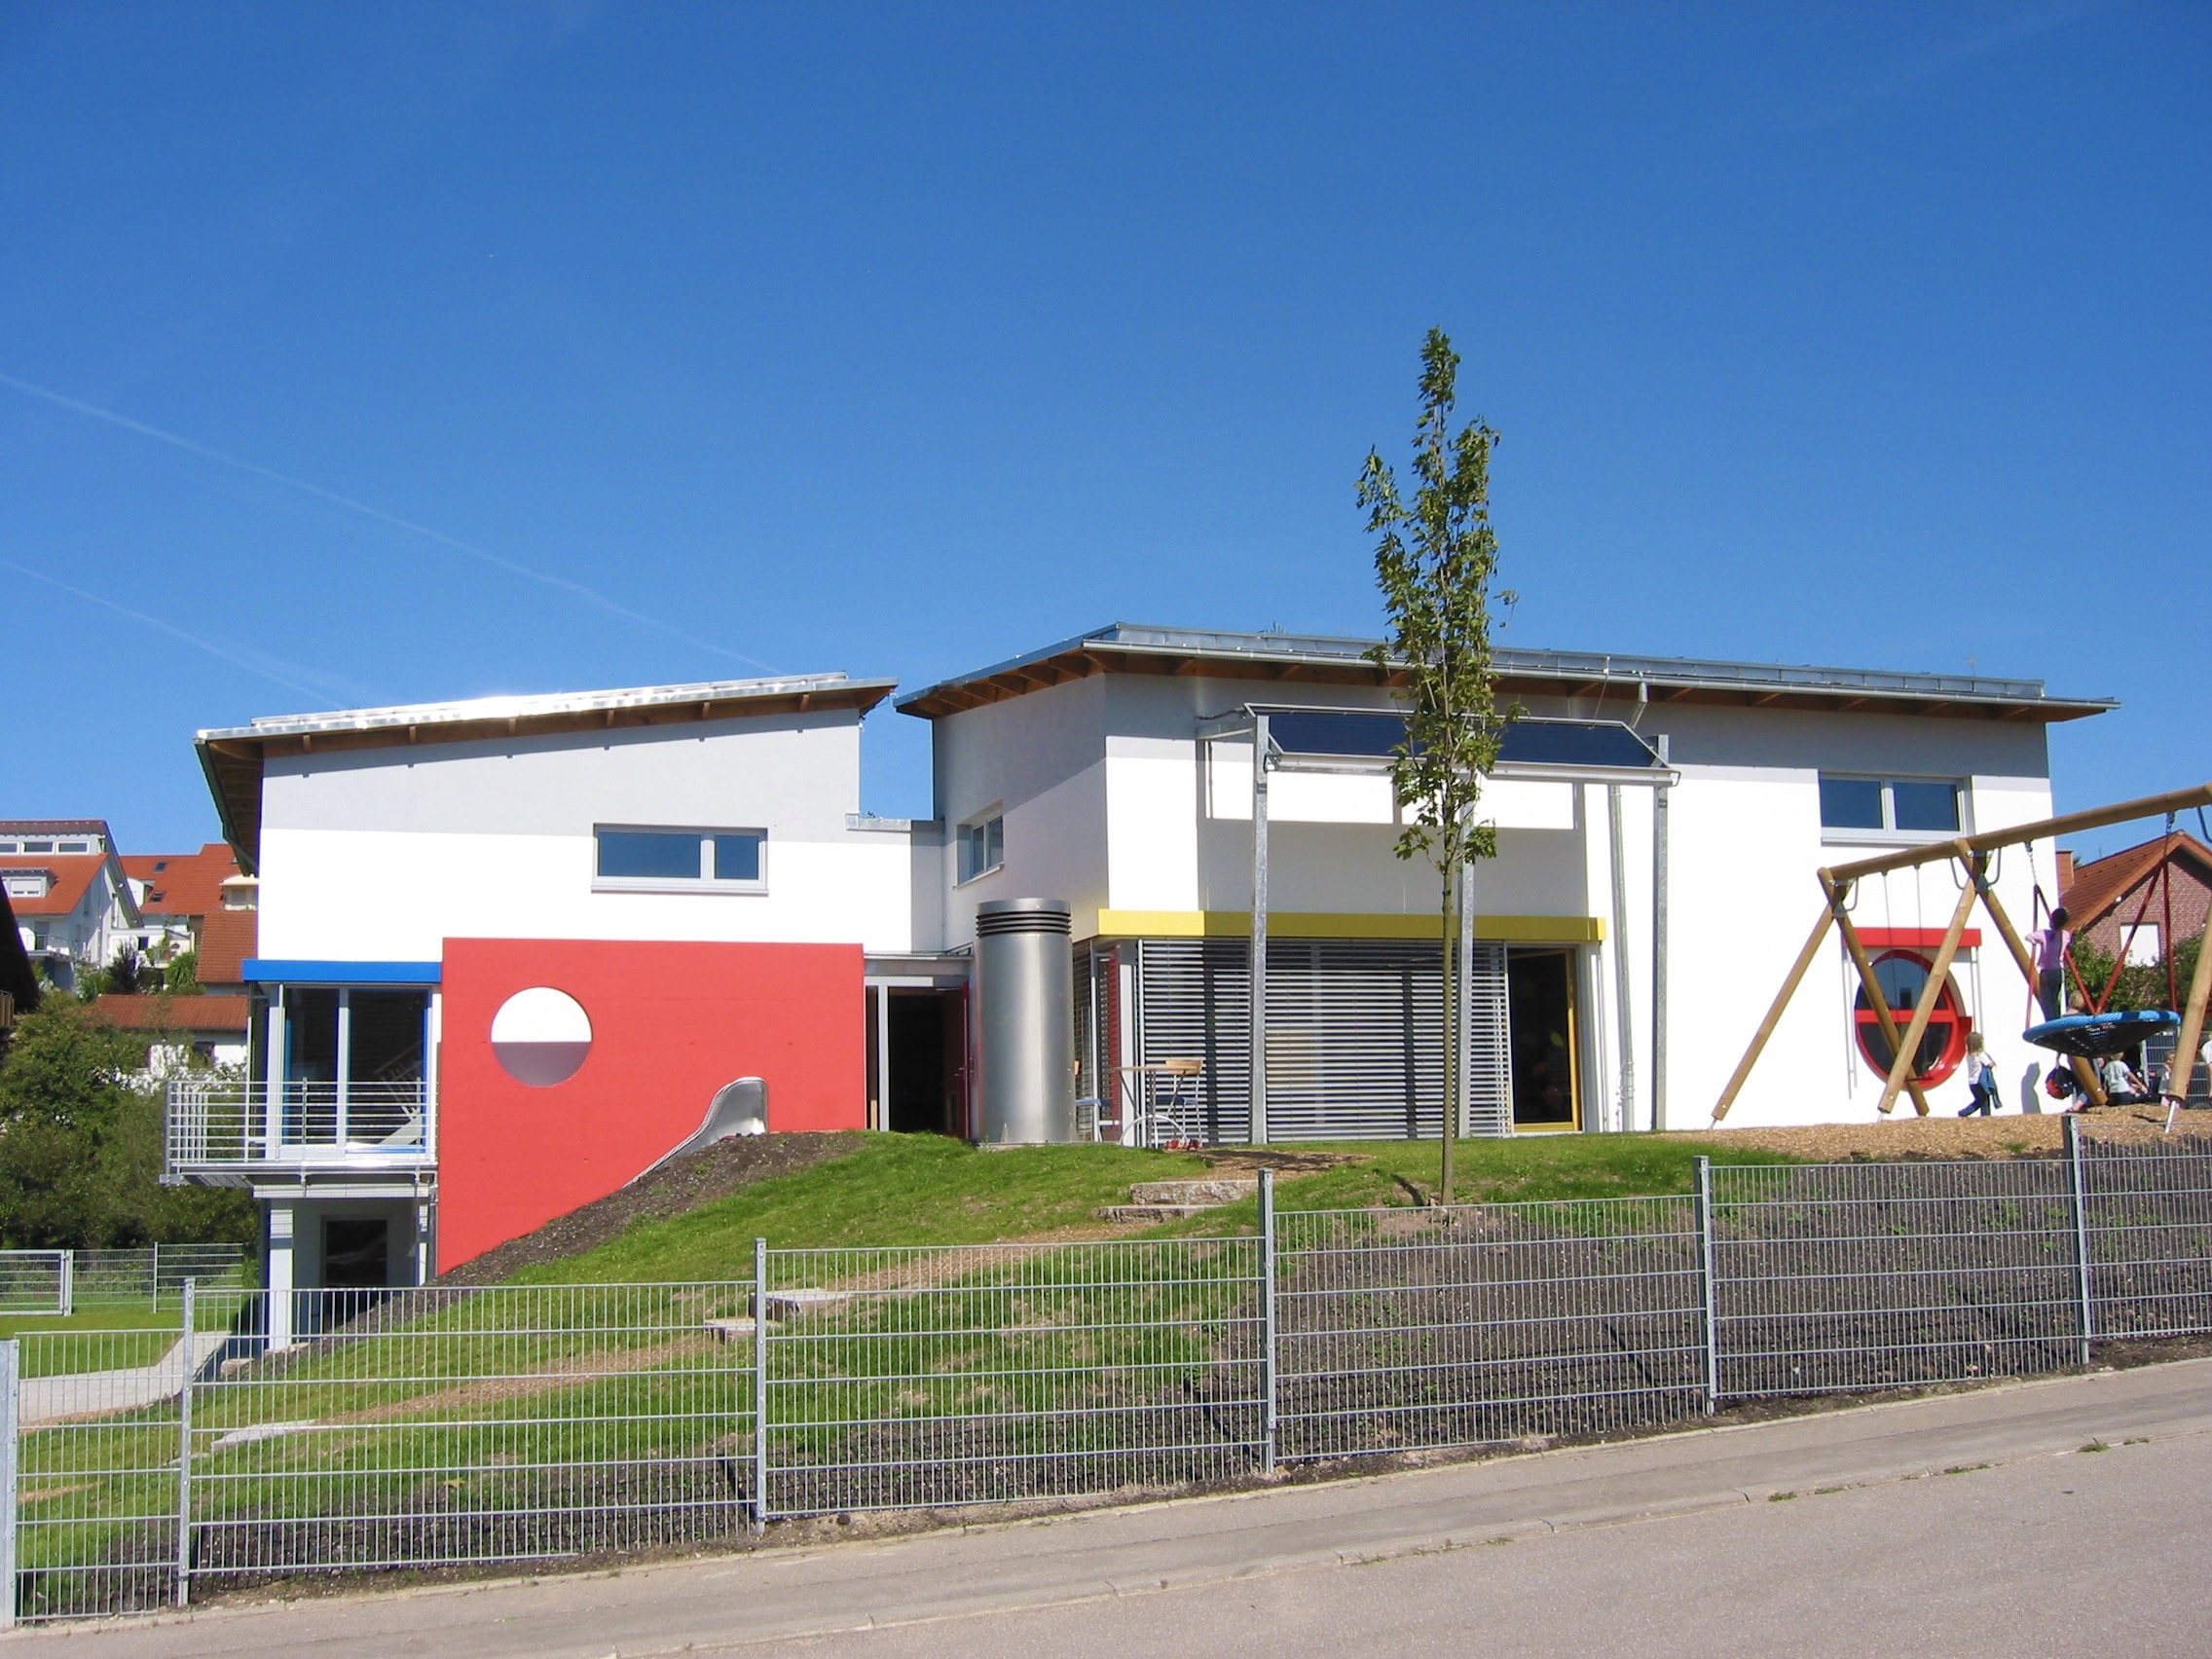 Kinderhaus Abtsgmünd 2004
Minimalenergiebauweise
Begrünte Dachflächen
Solartechnik	